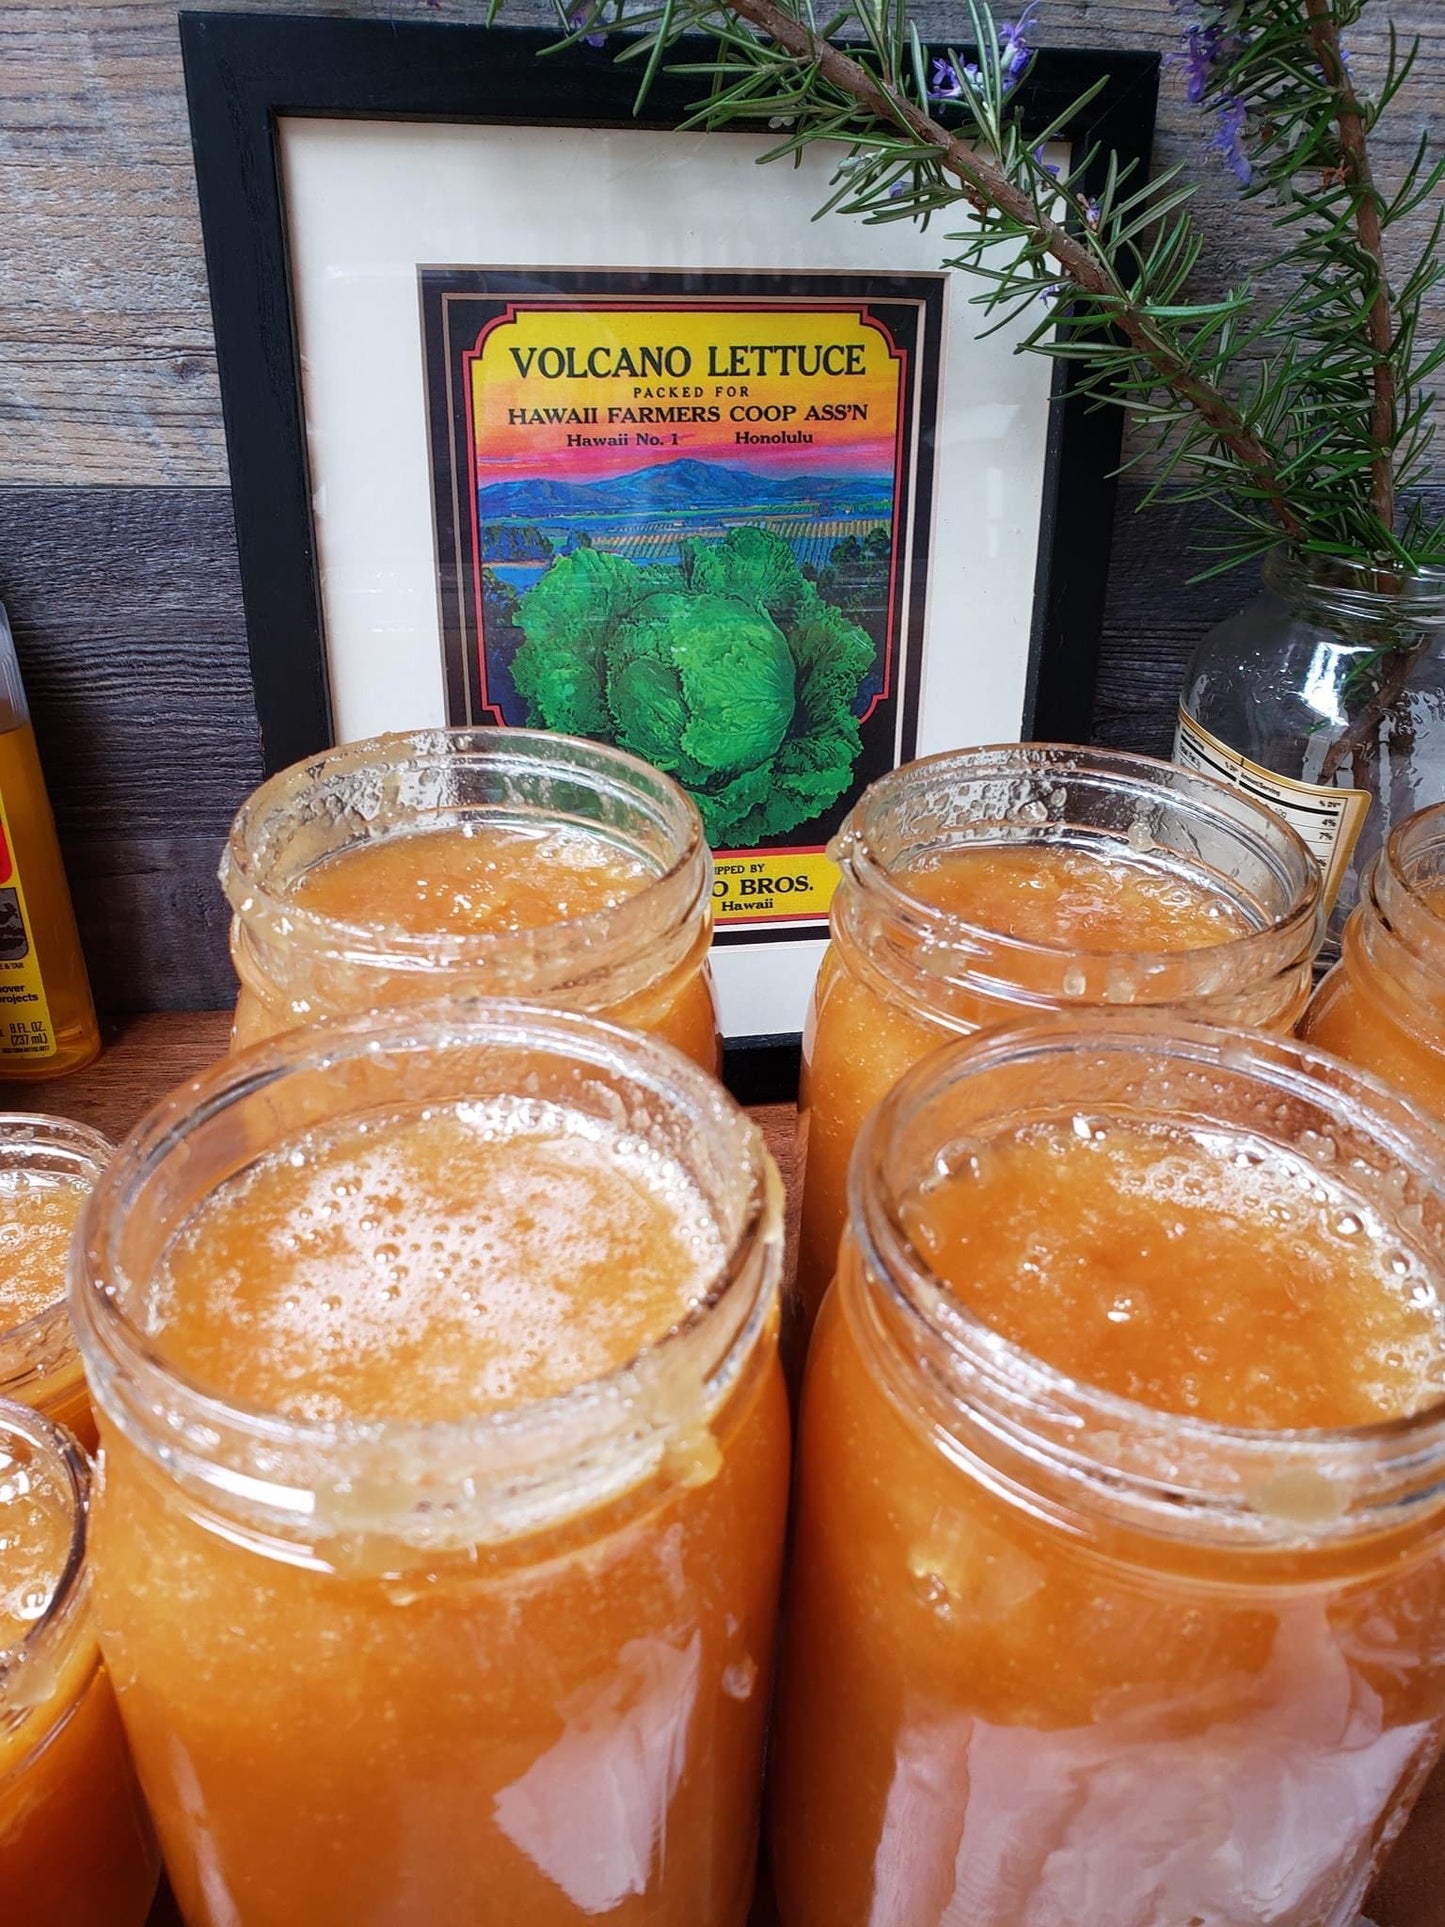 Ohia Lehua Honey - Raw and Unfiltered